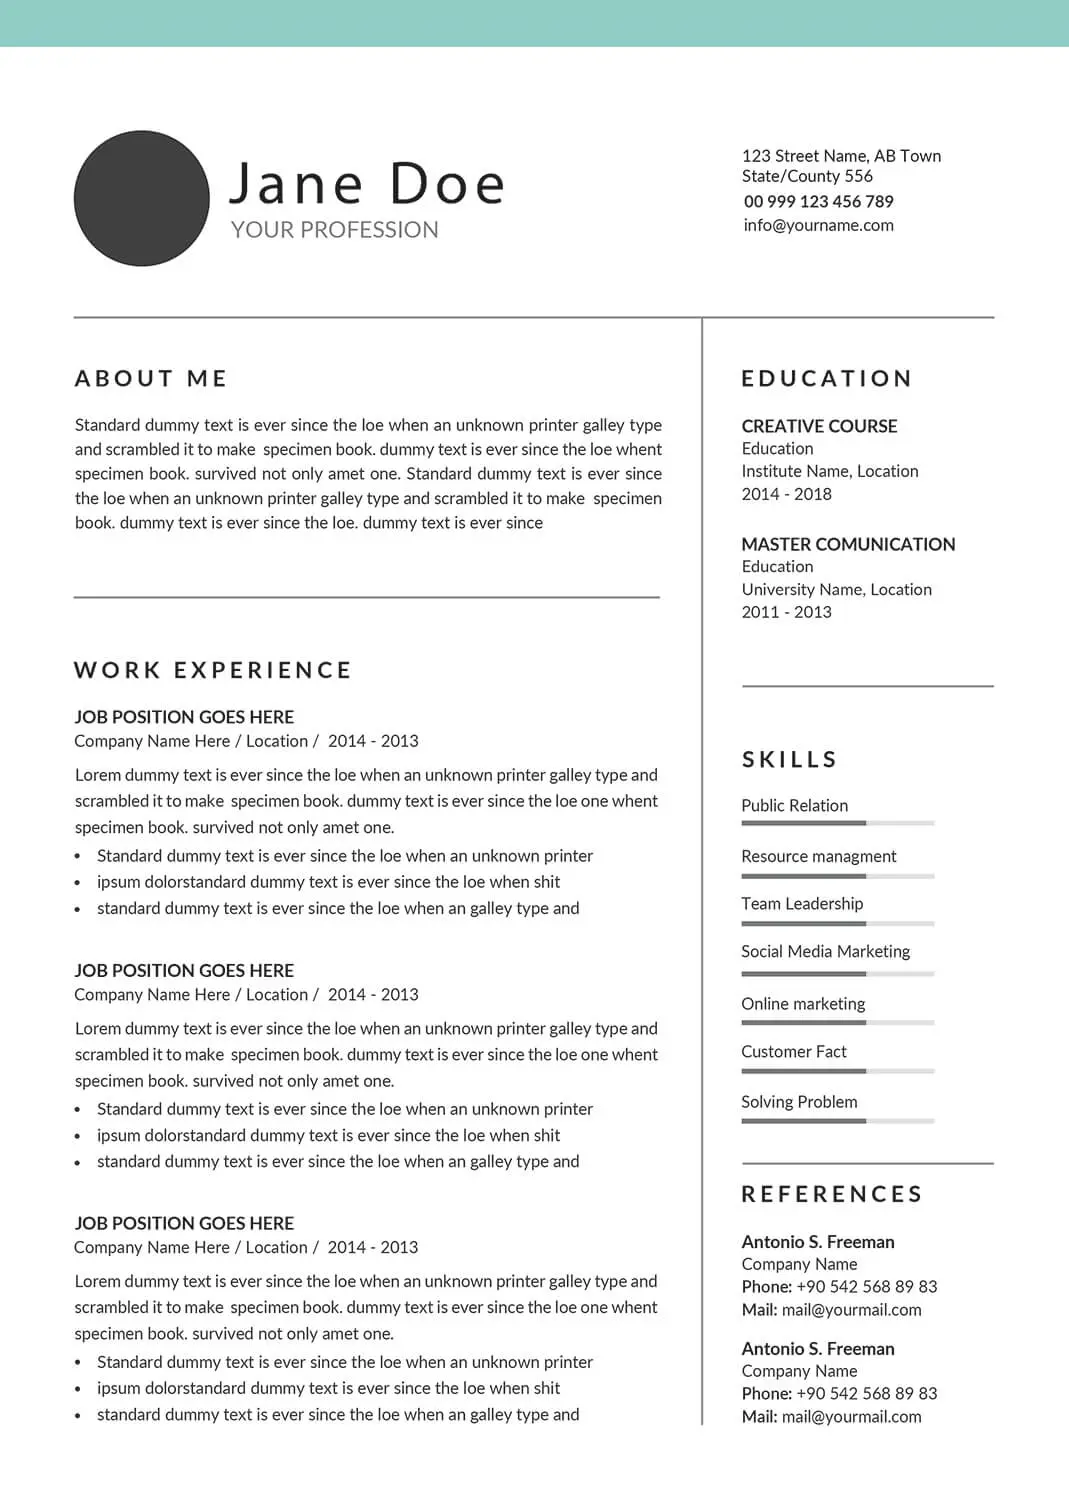 social-work-resume